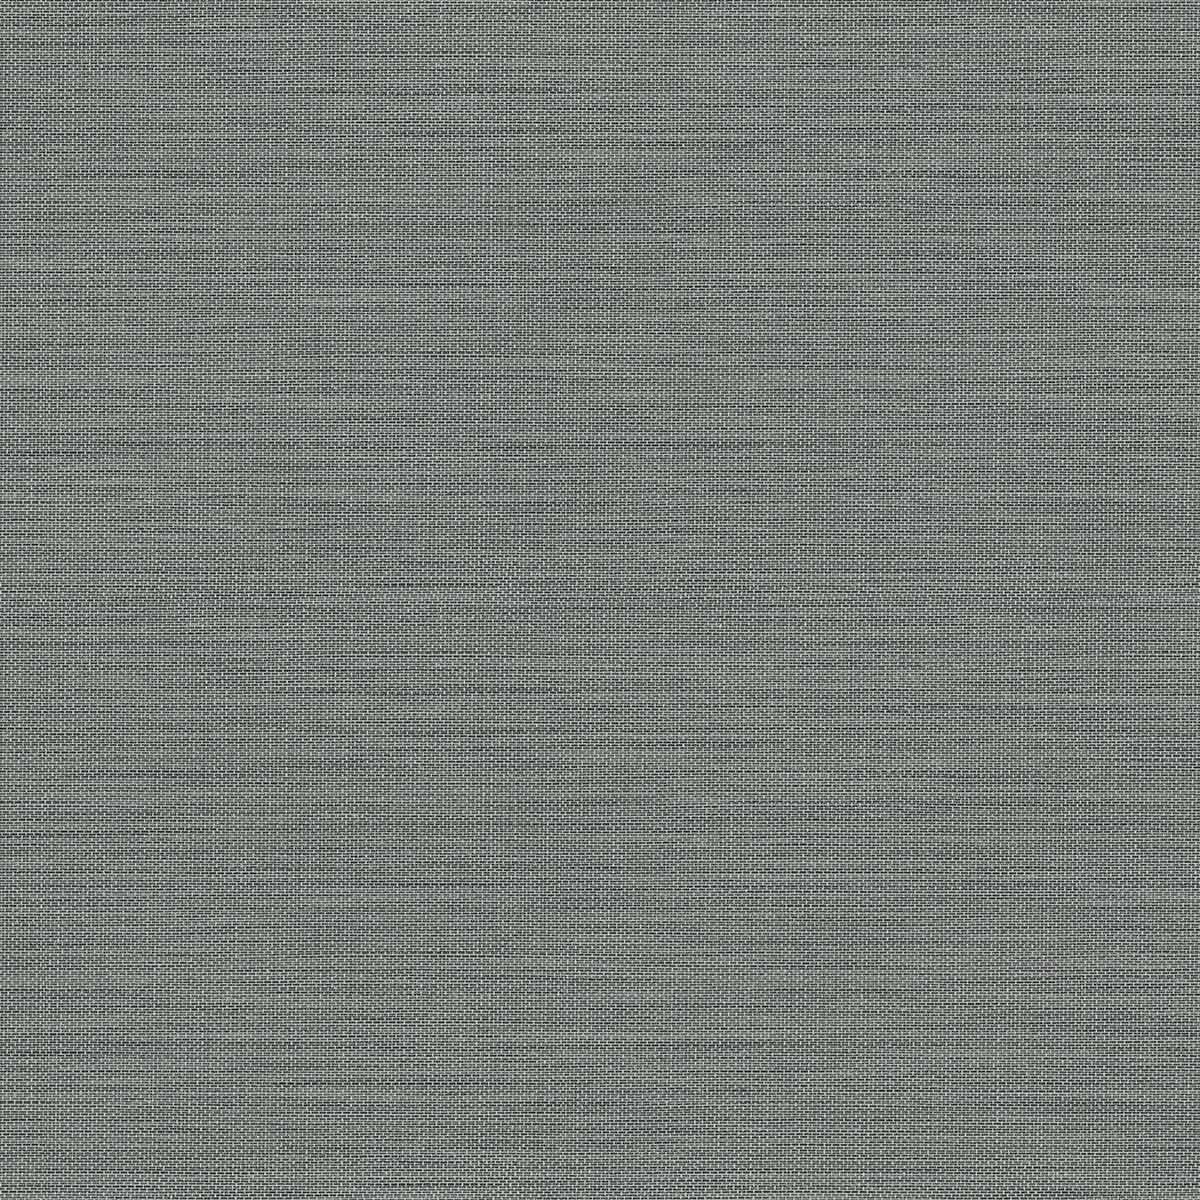 Linen & silk textures III GT30209